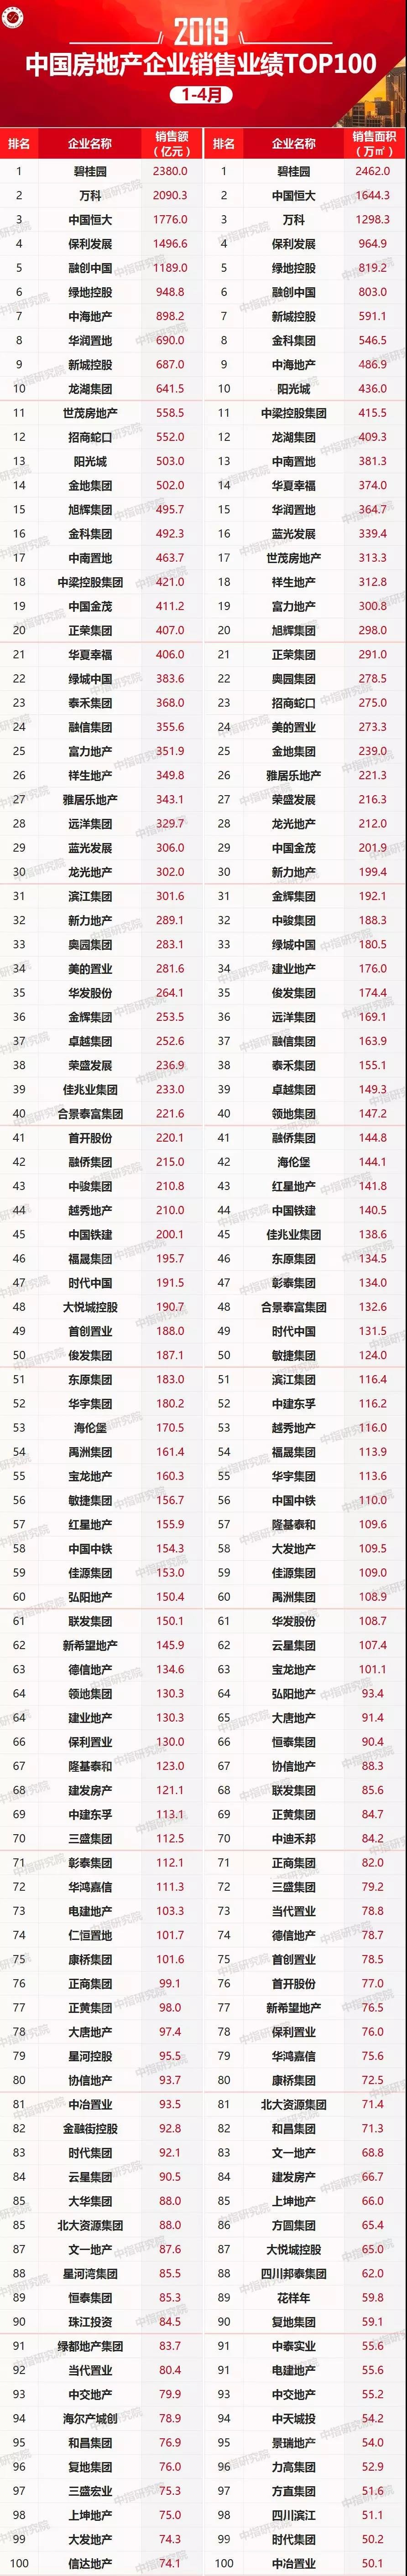 2019年1-4月中国房地产企业销售业绩100+拿地排行榜